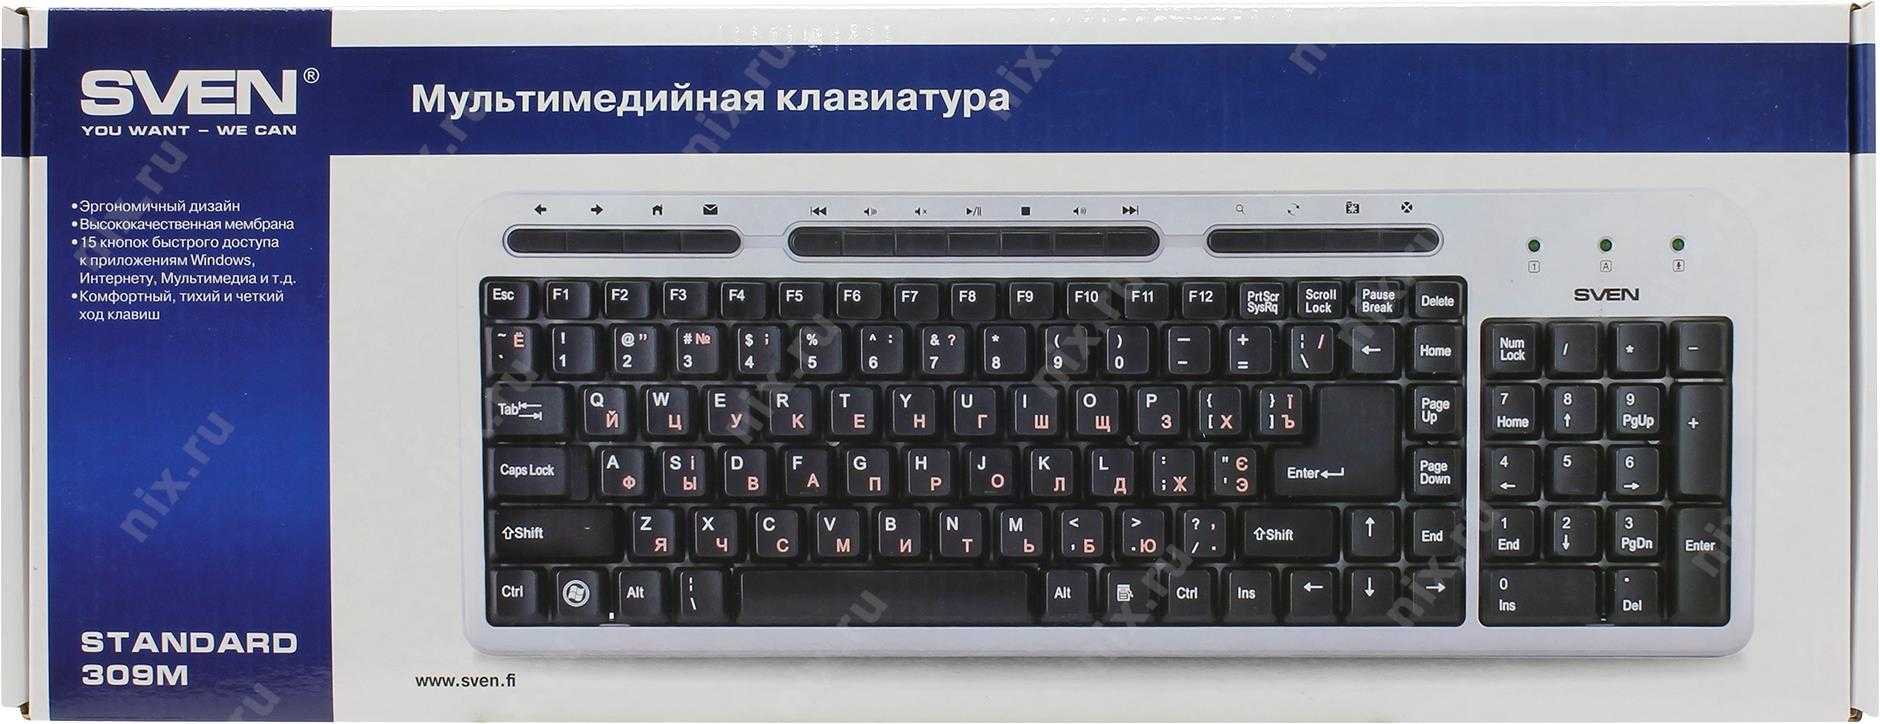 Клавиатуры sven